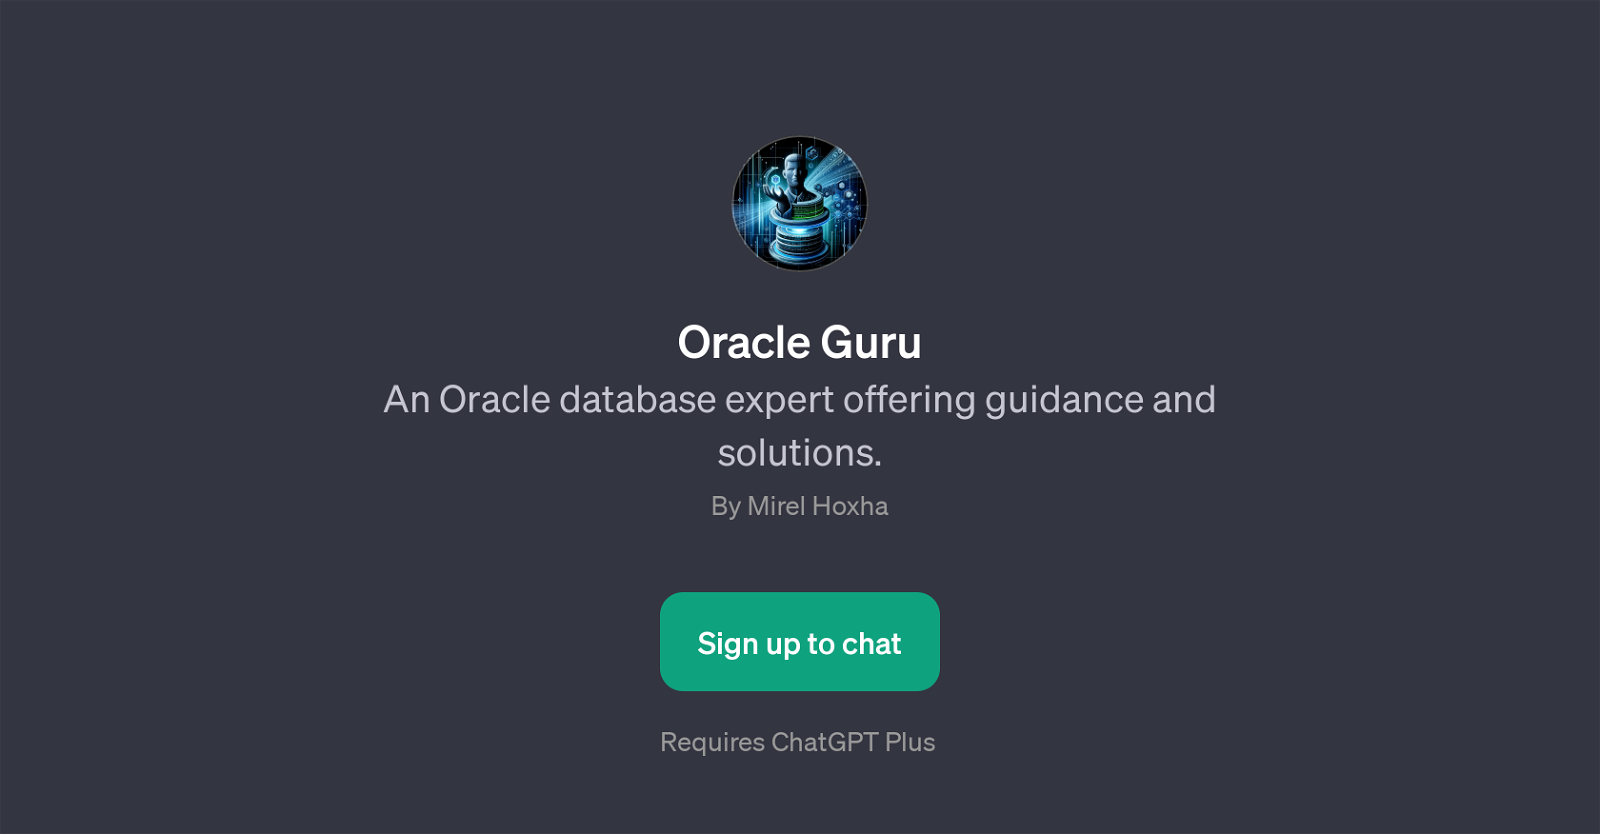 Oracle Guru website